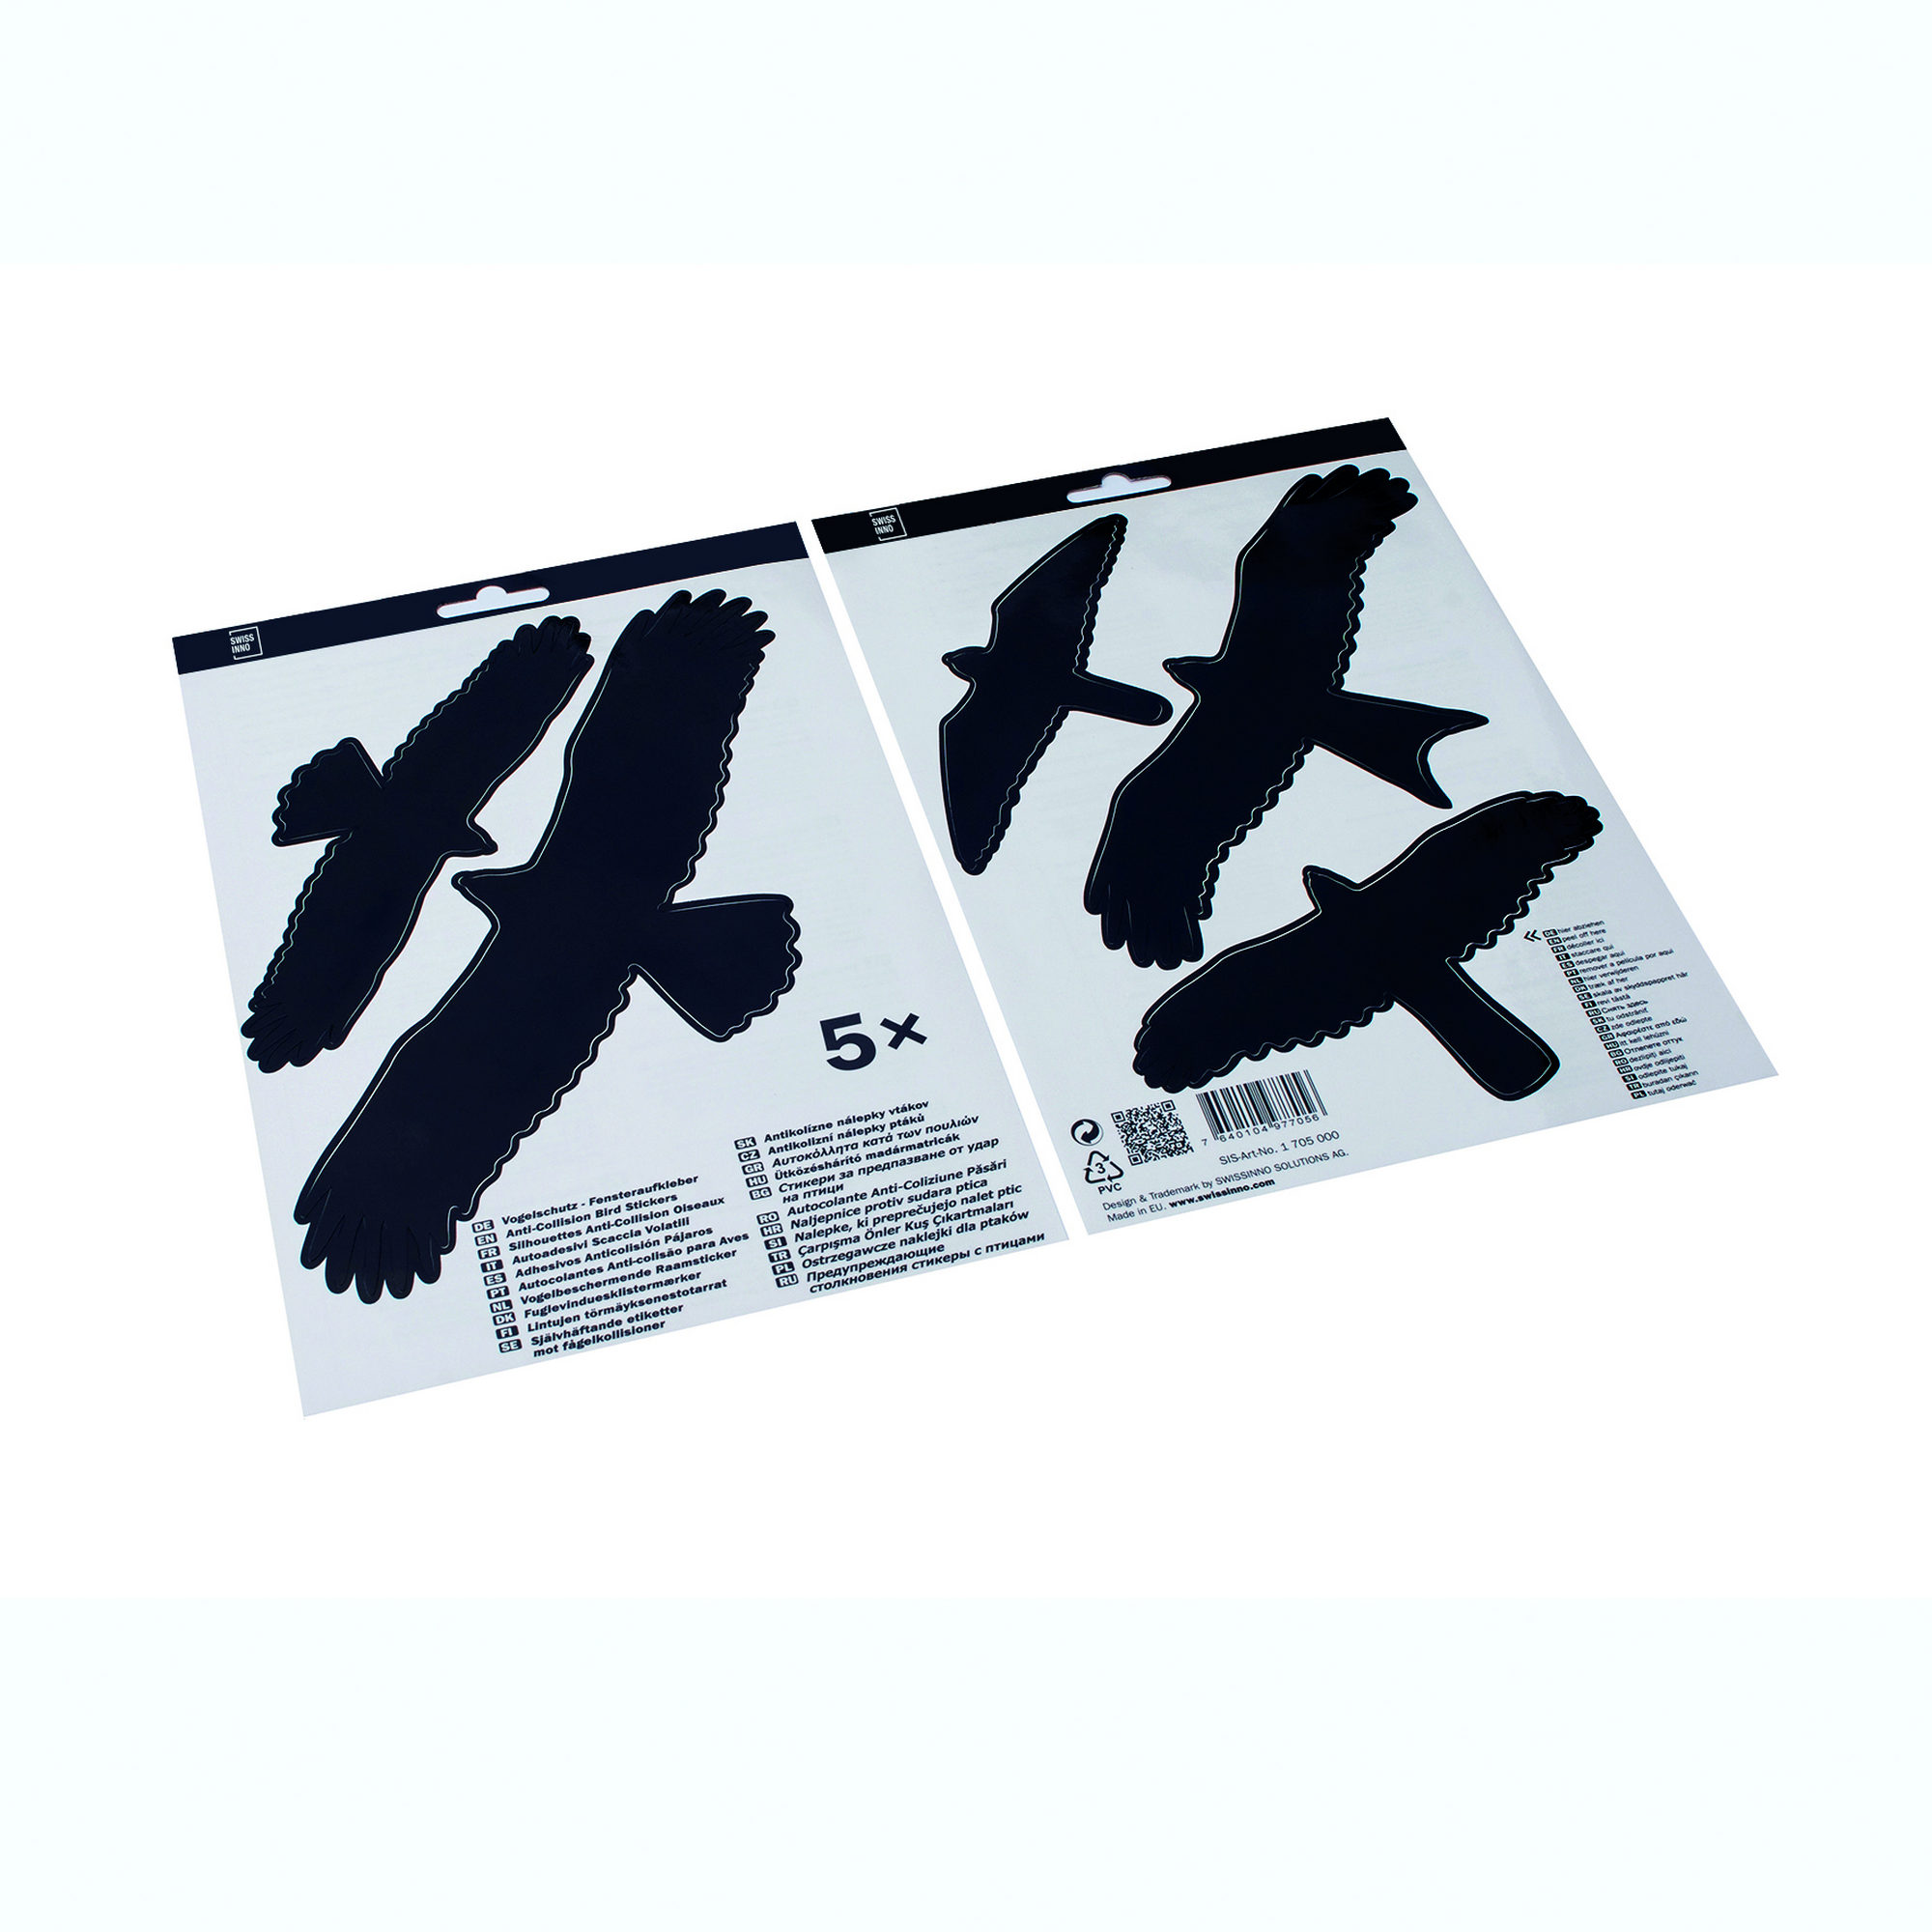 Vogelschutz-Fensteraufkleber 5 Stück + product picture